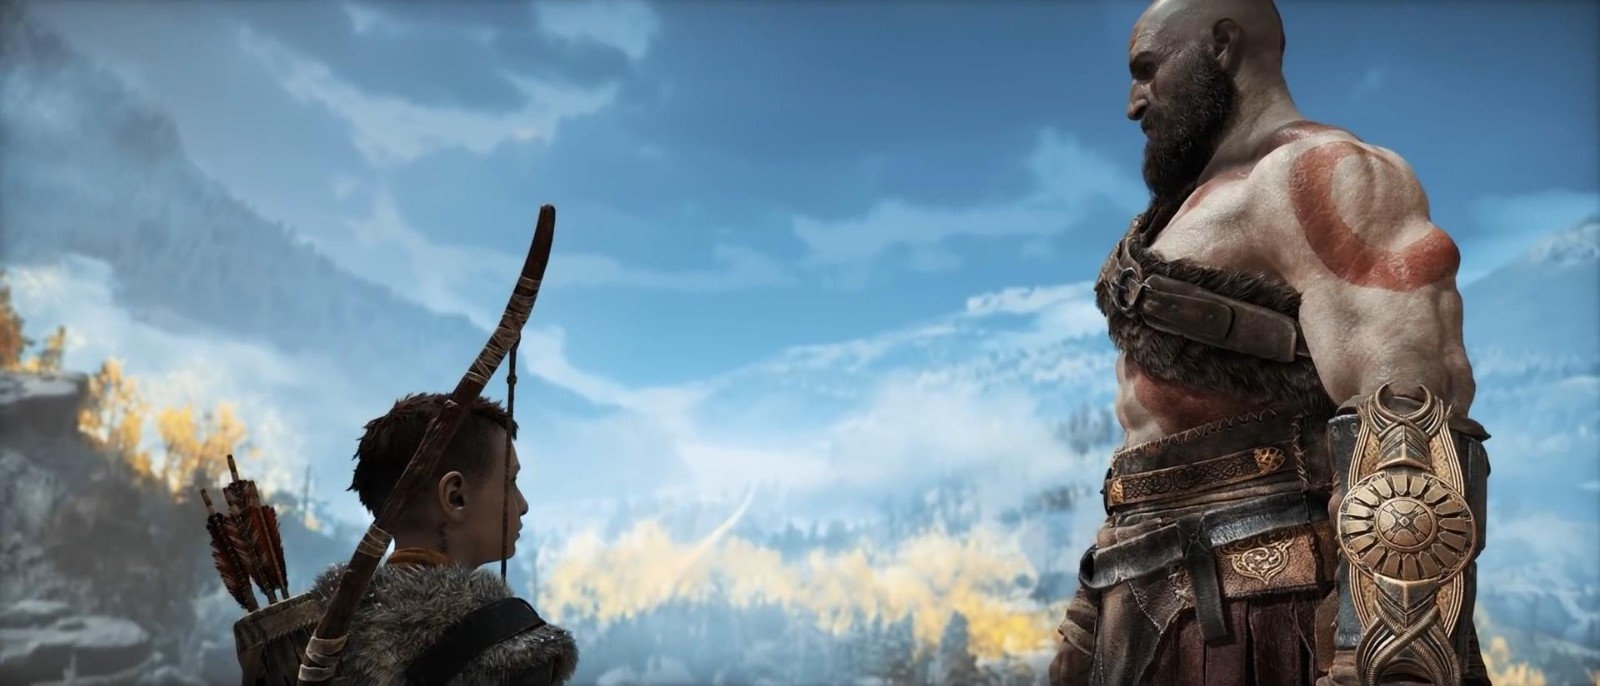 《战神4》PC版演示视频 支持超宽屏颇具挑战性